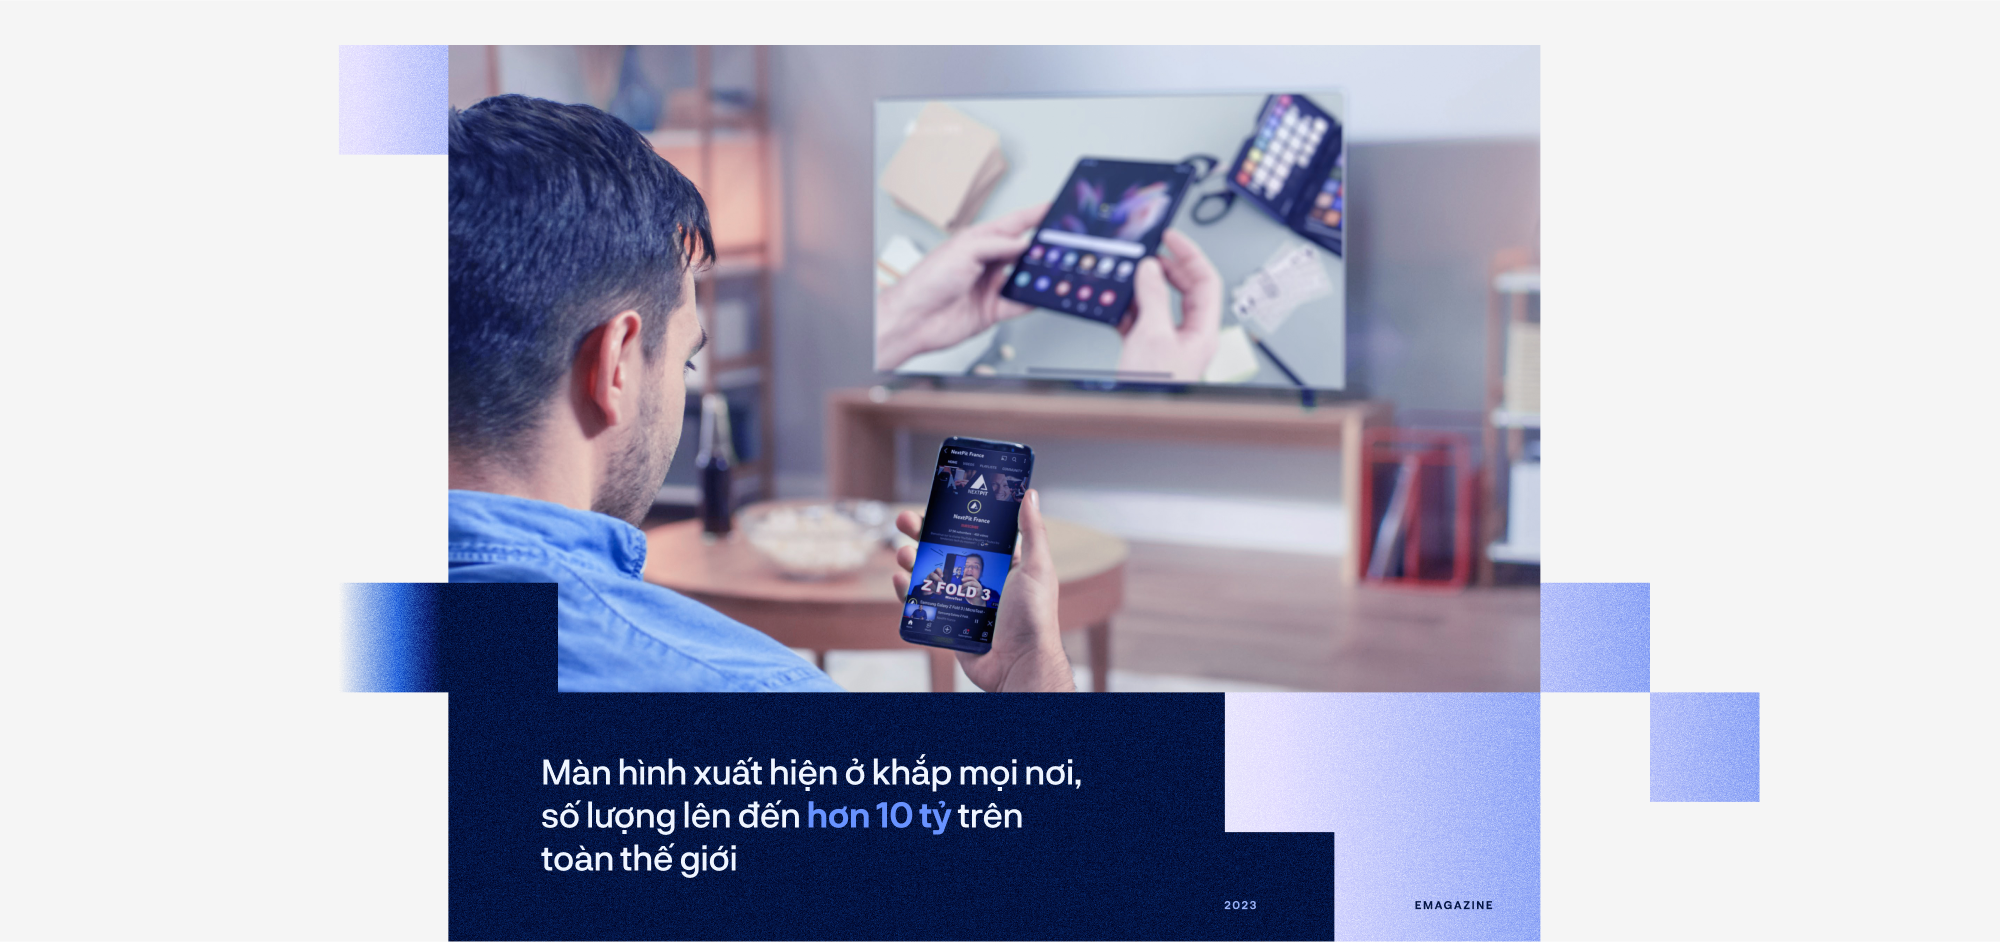 TV Samsung khẳng định tầm nhìn công nghệ hiển thị tương lai - Ảnh 1.